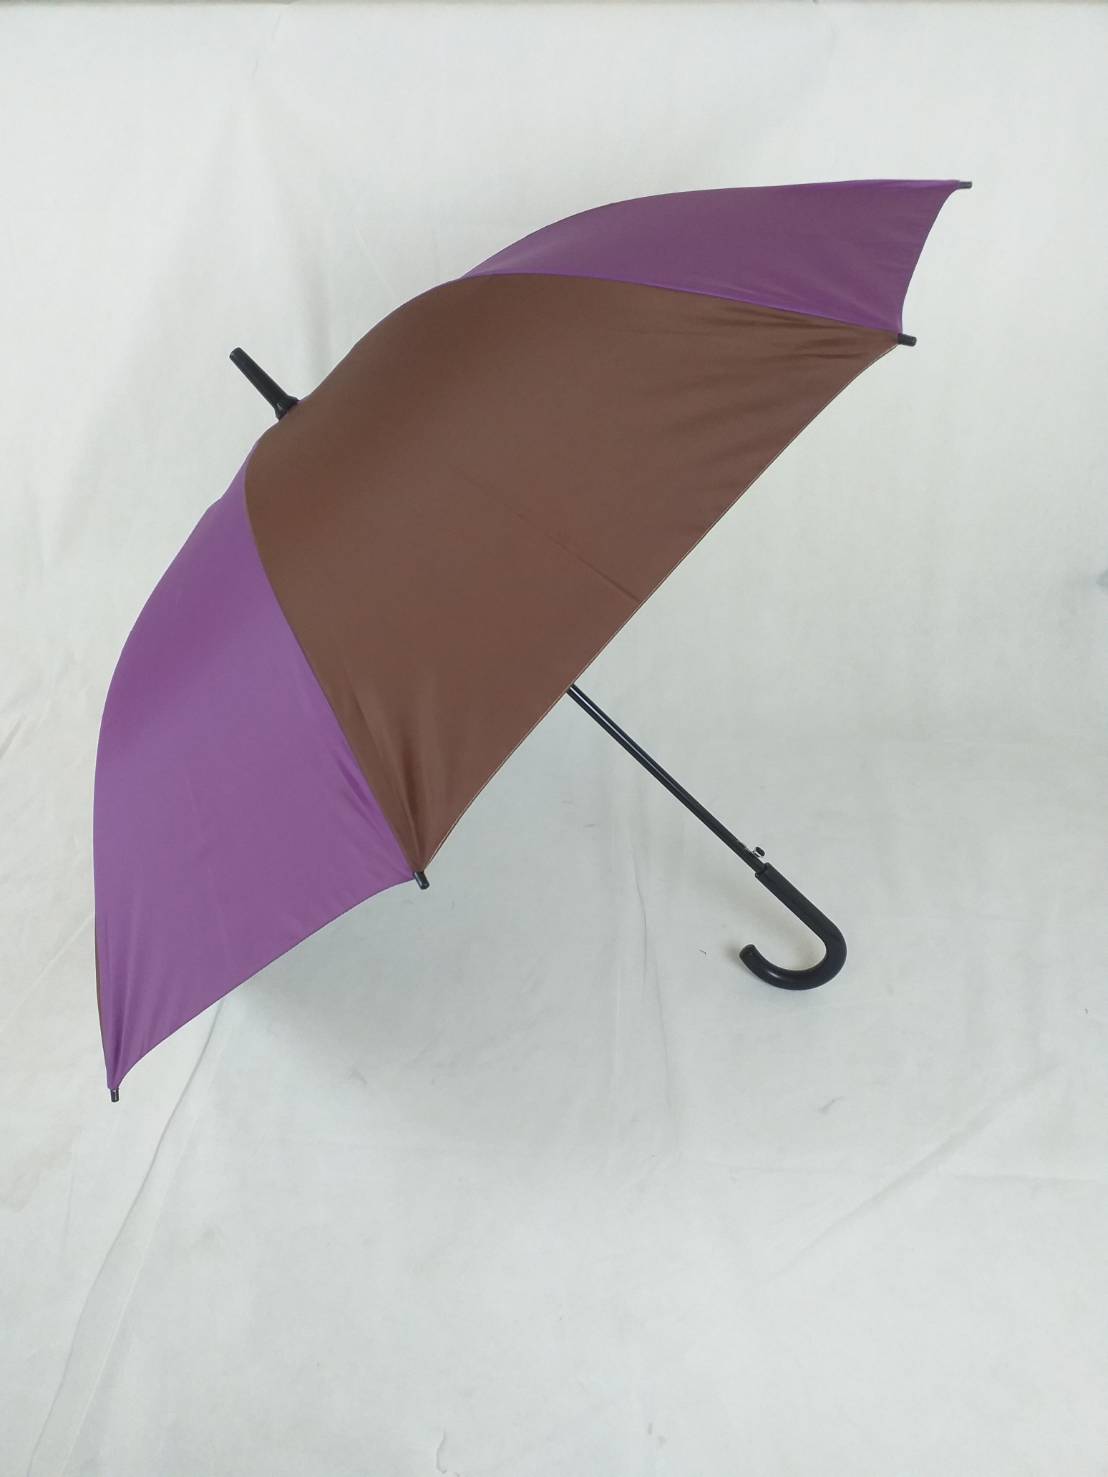 ร่มกอล์ฟ ร่มคันใหญ่ เปิดออโต้ รหัส 28142-7 แกนเหล็กแข็งแรง ผ้าทูโทน ด้ามงอ กันUV ร่มกันแดด กันน้ำ ผลิตในไทย golf umbrella